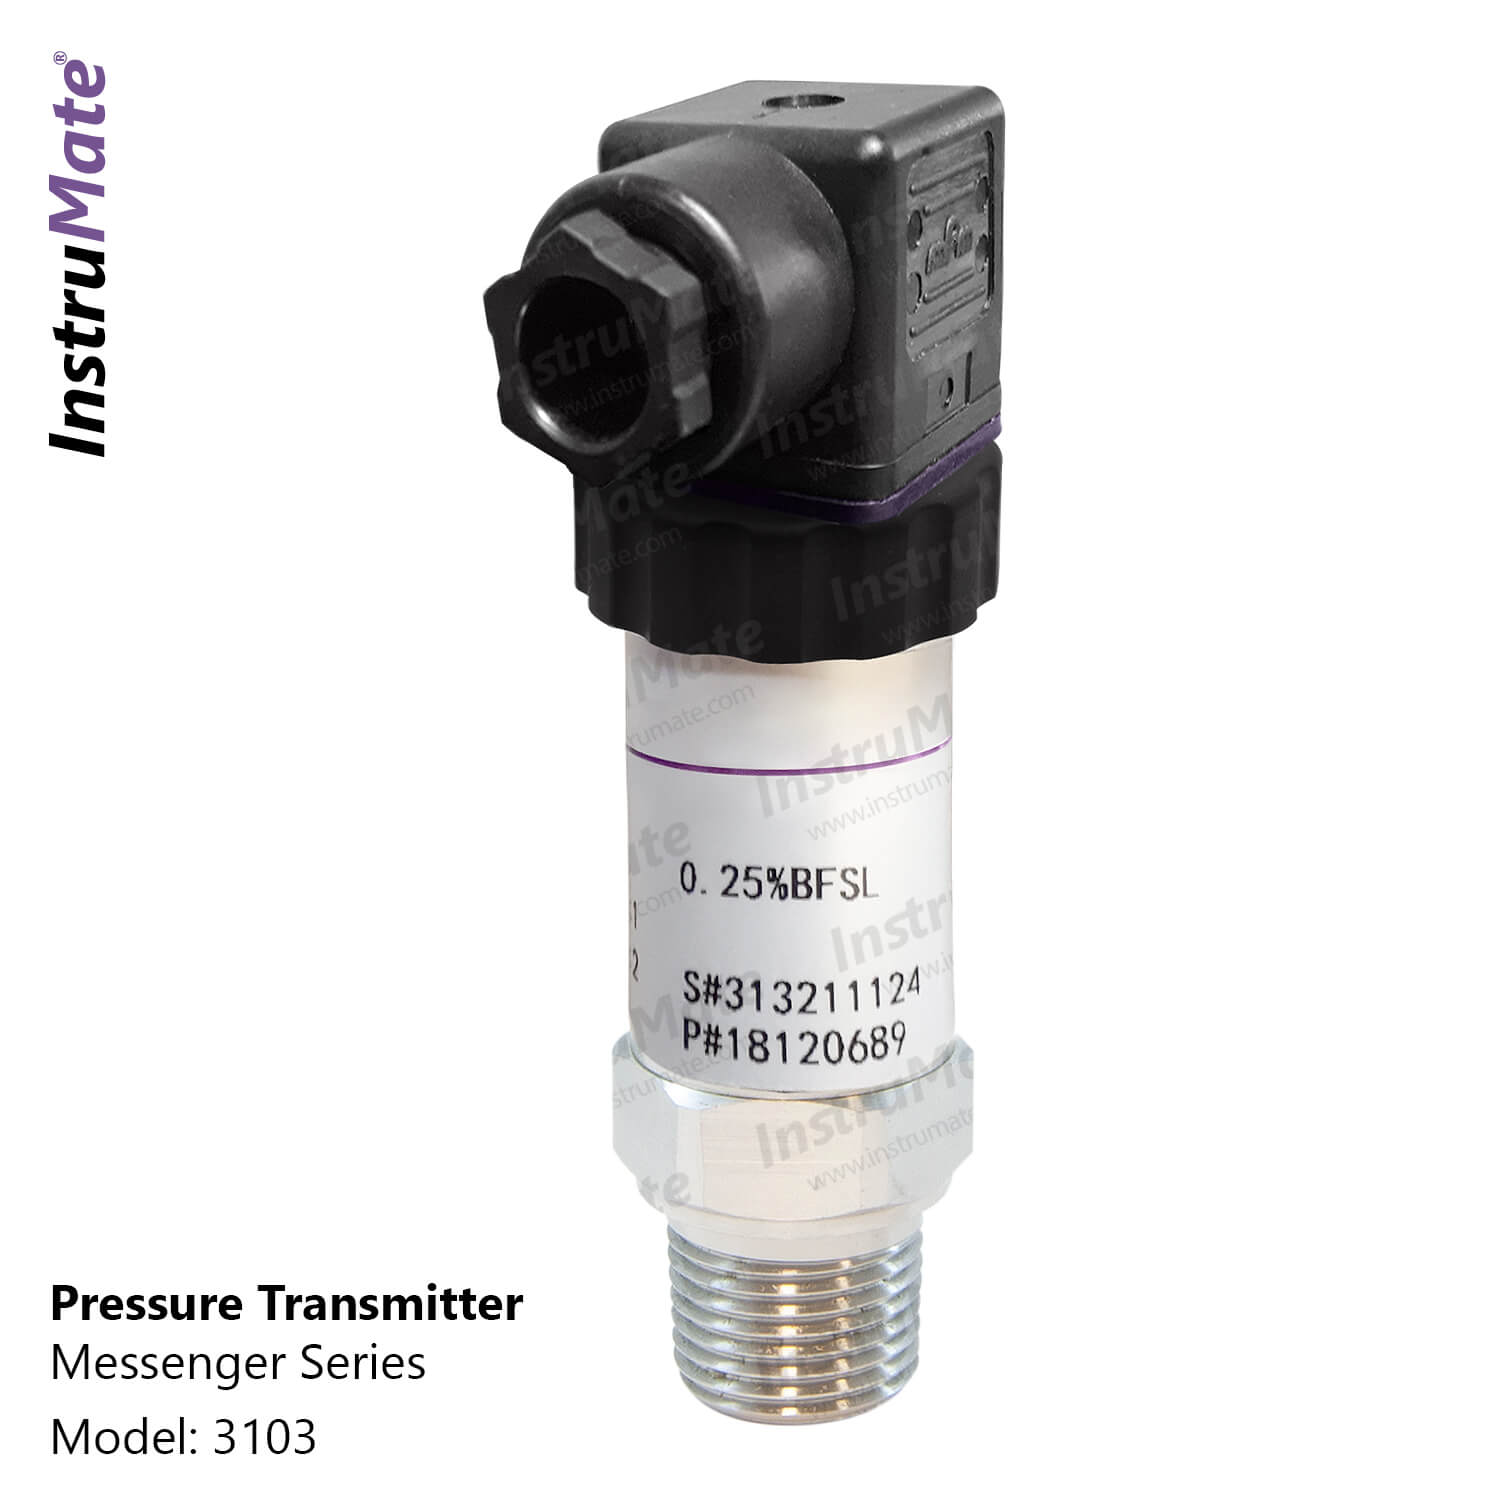 Pressure transmitter - 3103 - InstruMate